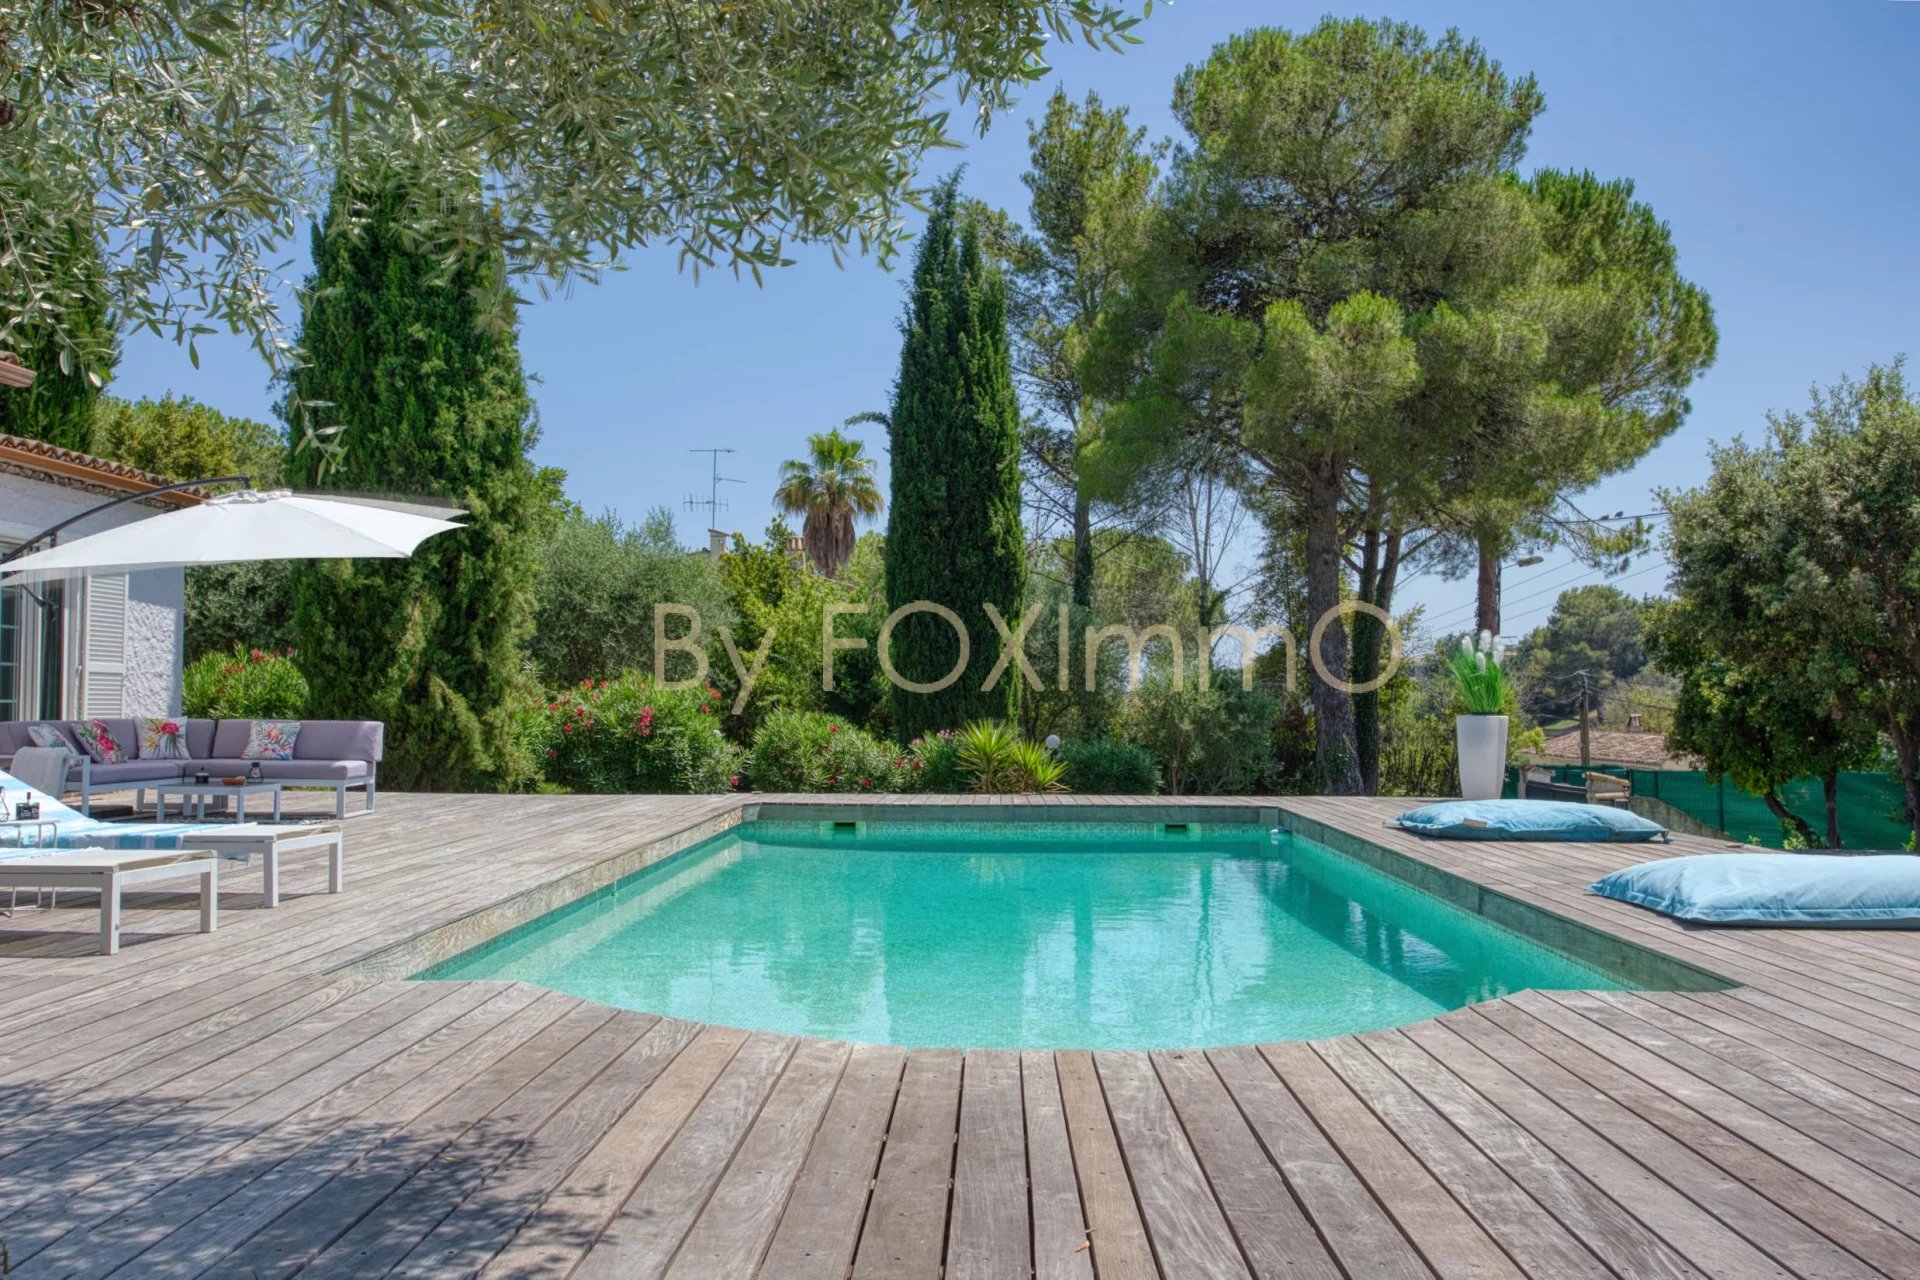 EXCLUSIVITÉ ! A VENDRE sur la côte d'Azur, Saint Paul, villa plain-pied, rénovée, calme, piscine, jardin plat, double garage